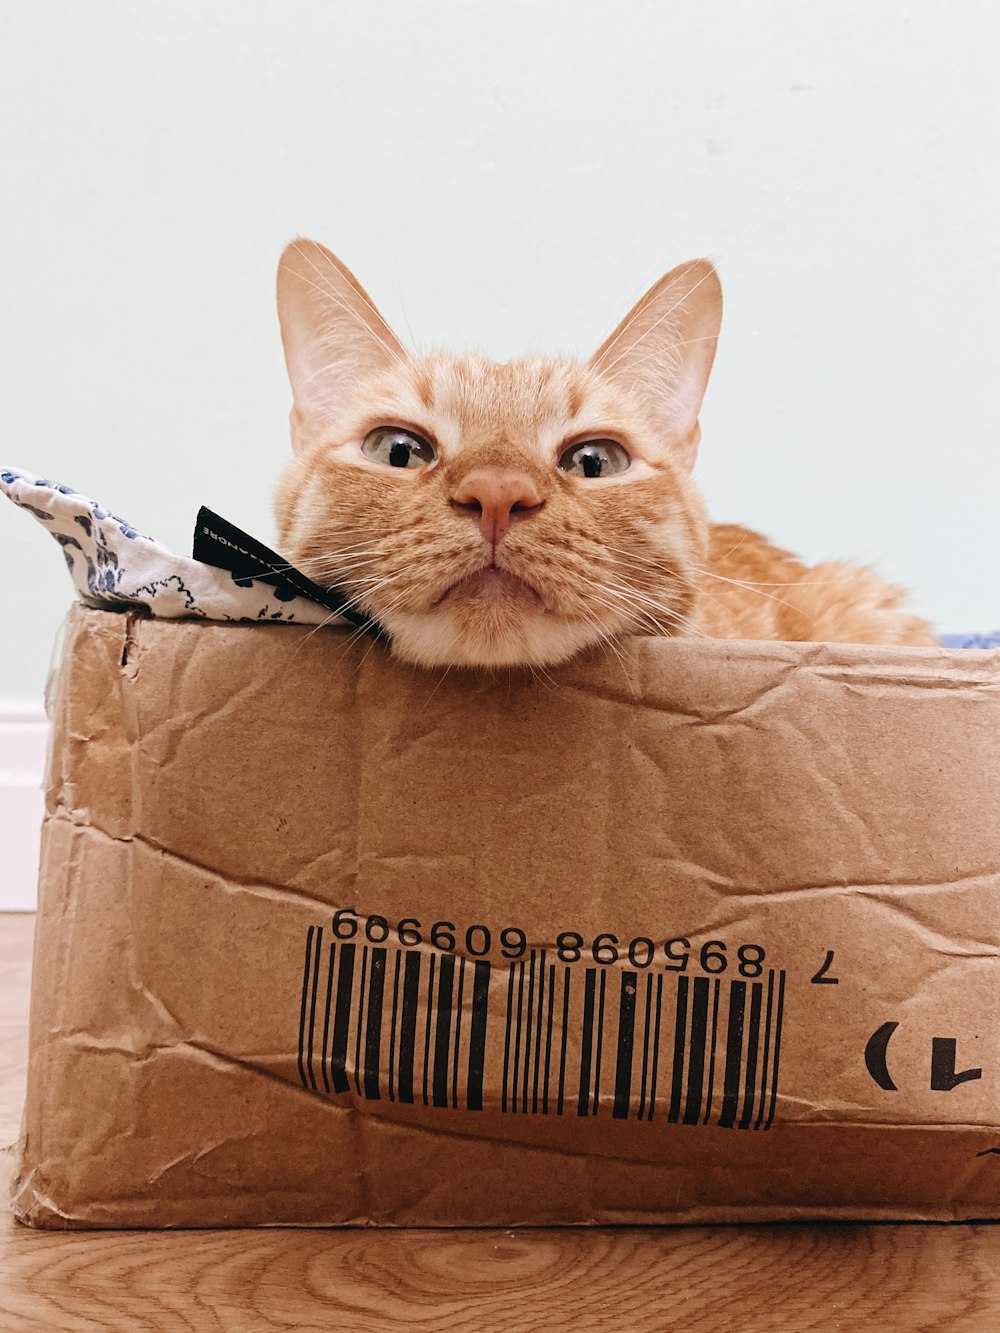 갈색 마분지 상자에 있는 주황색 얼룩무늬 고양이